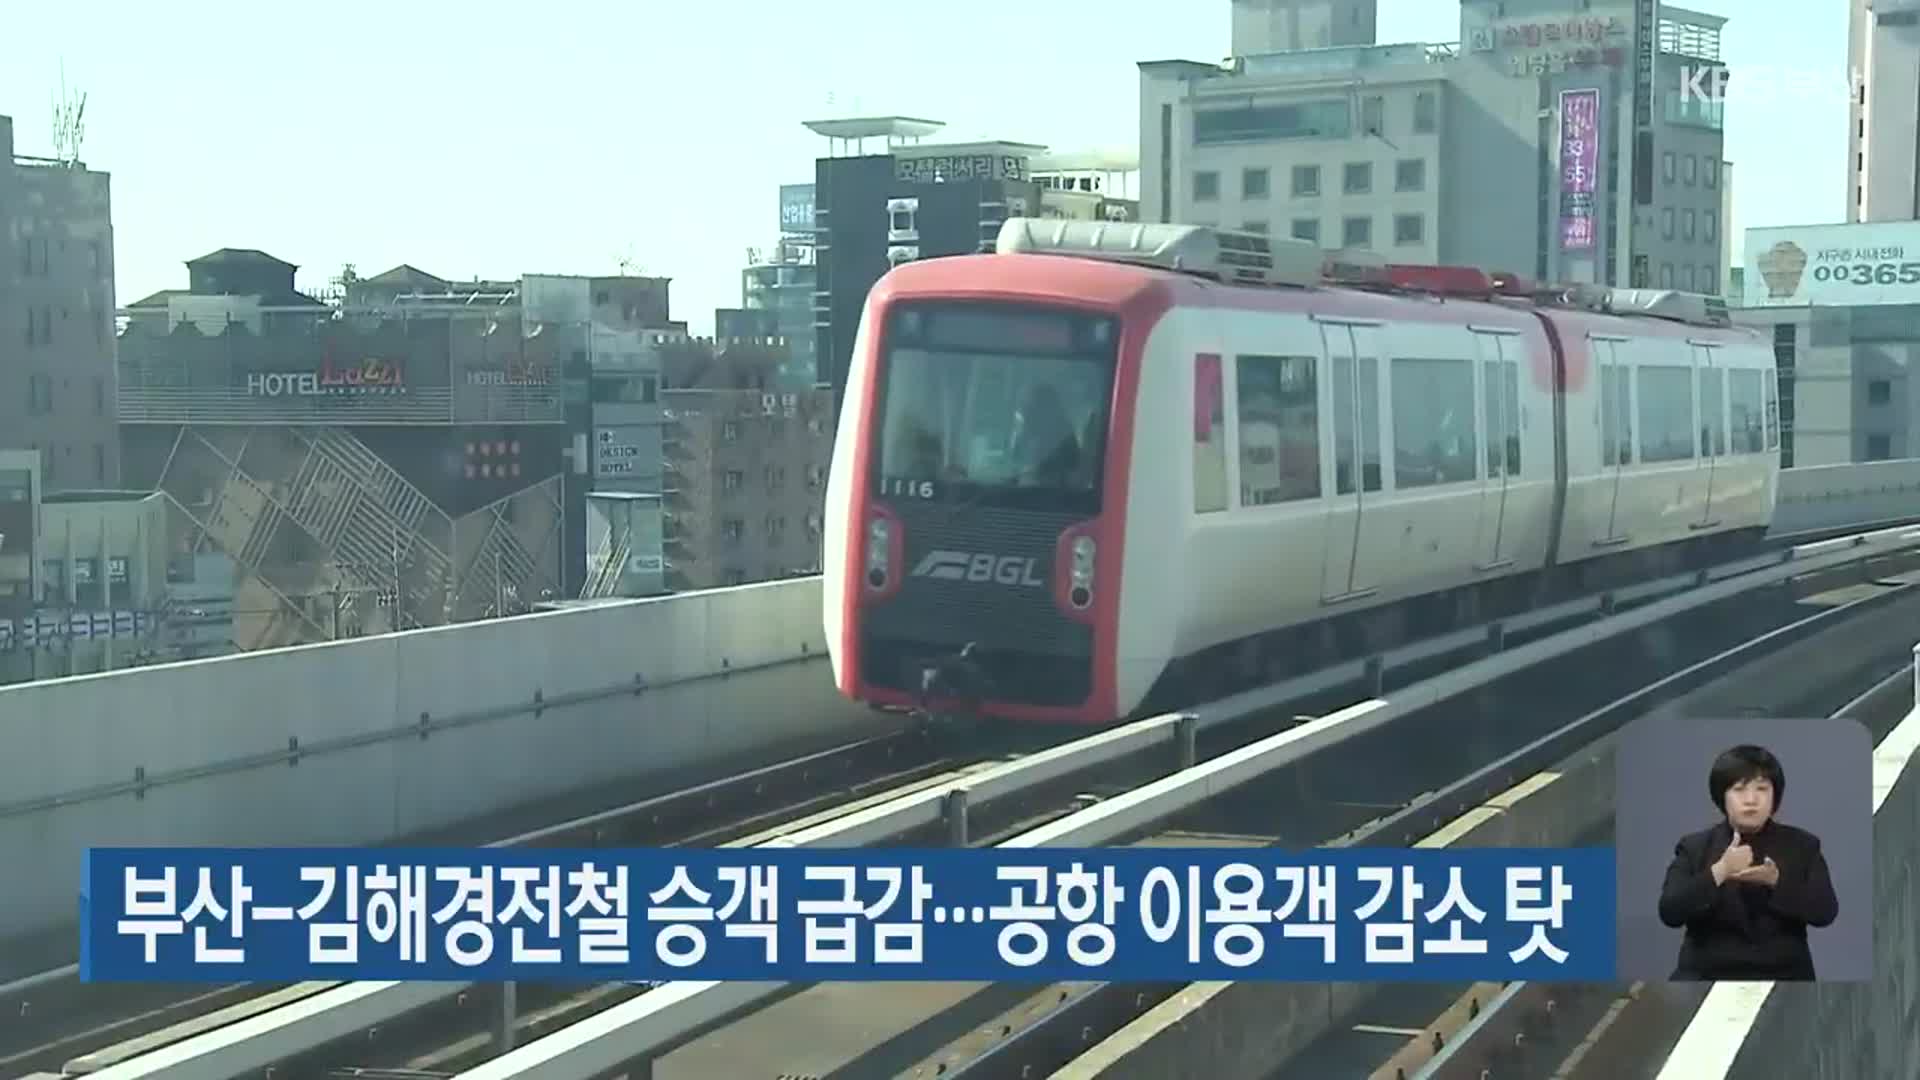 부산-김해경전철 승객 급감…공항 이용객 감소 탓